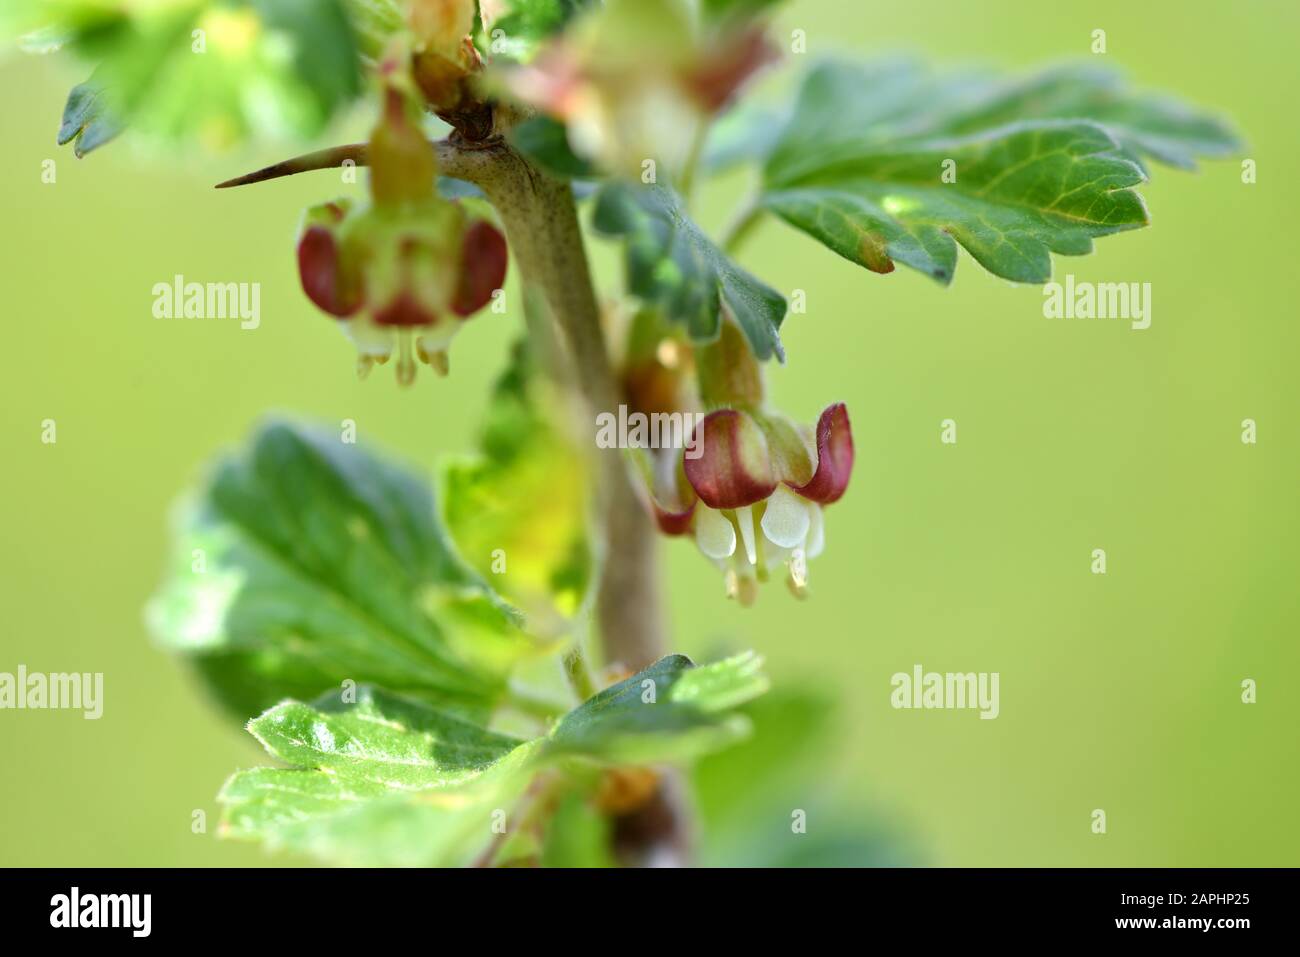 Flowers of gooseberry, Ribes uva-crispa, selective focus Stock Photo